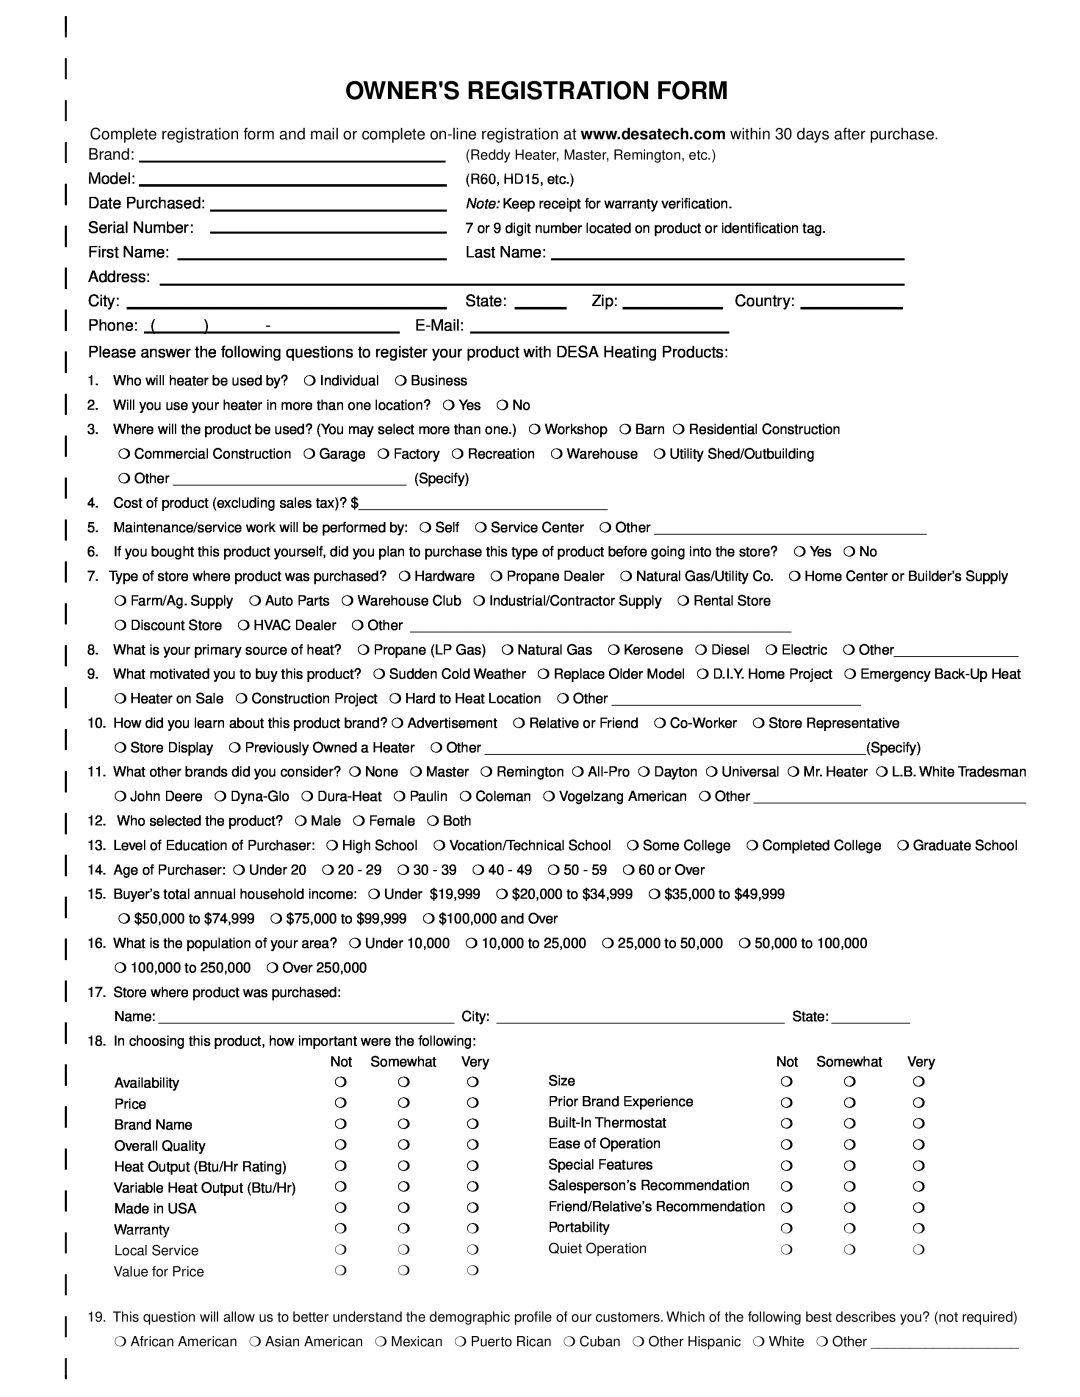 Desa REM30LP owner manual Owners Registration Form 